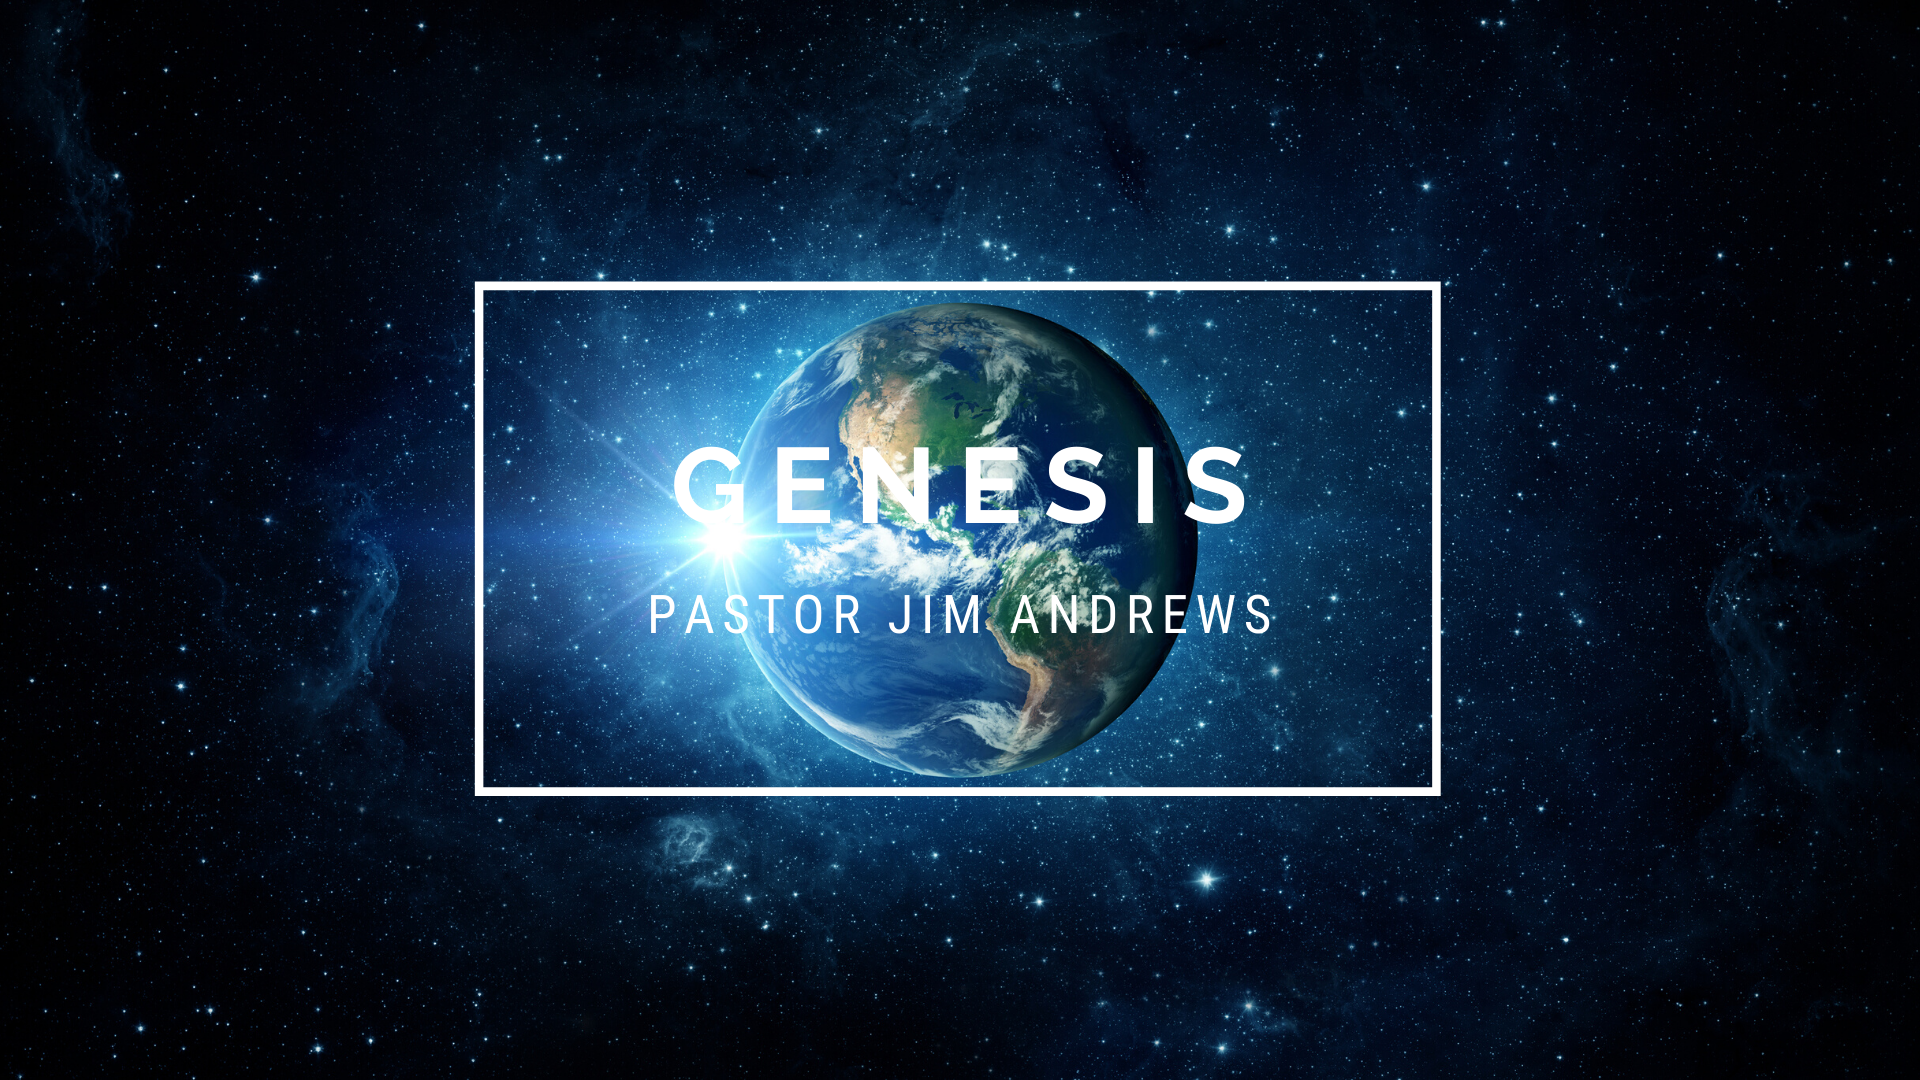 Genesis 1:1-2